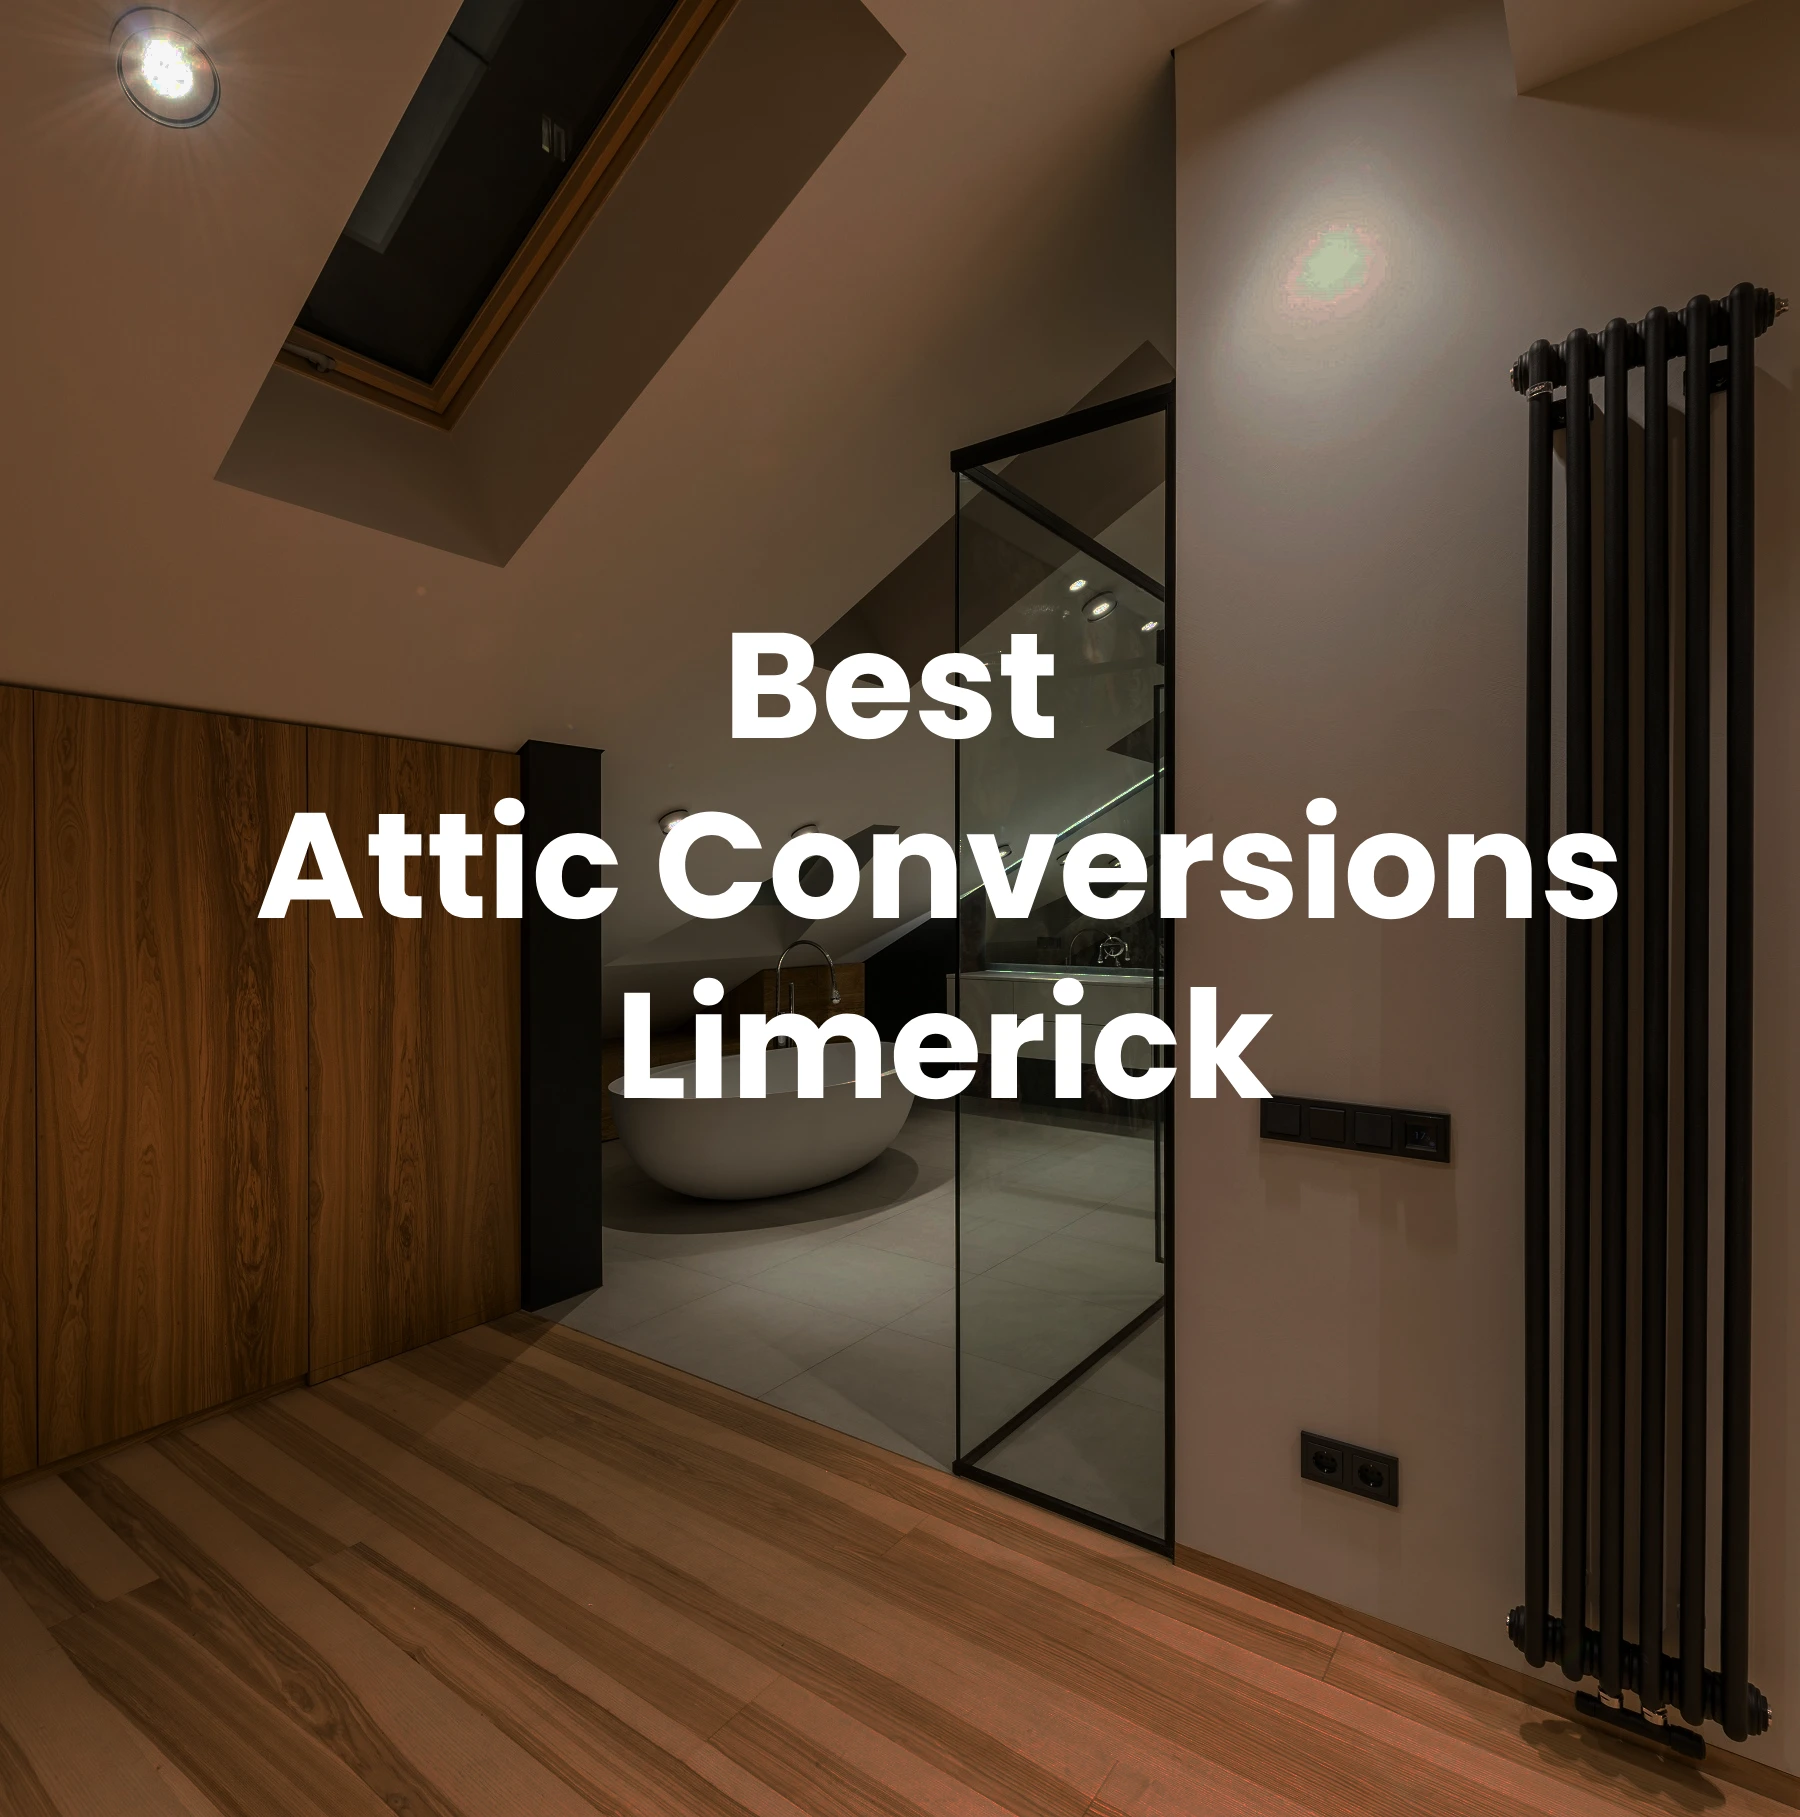 Attic Conversions Limerick